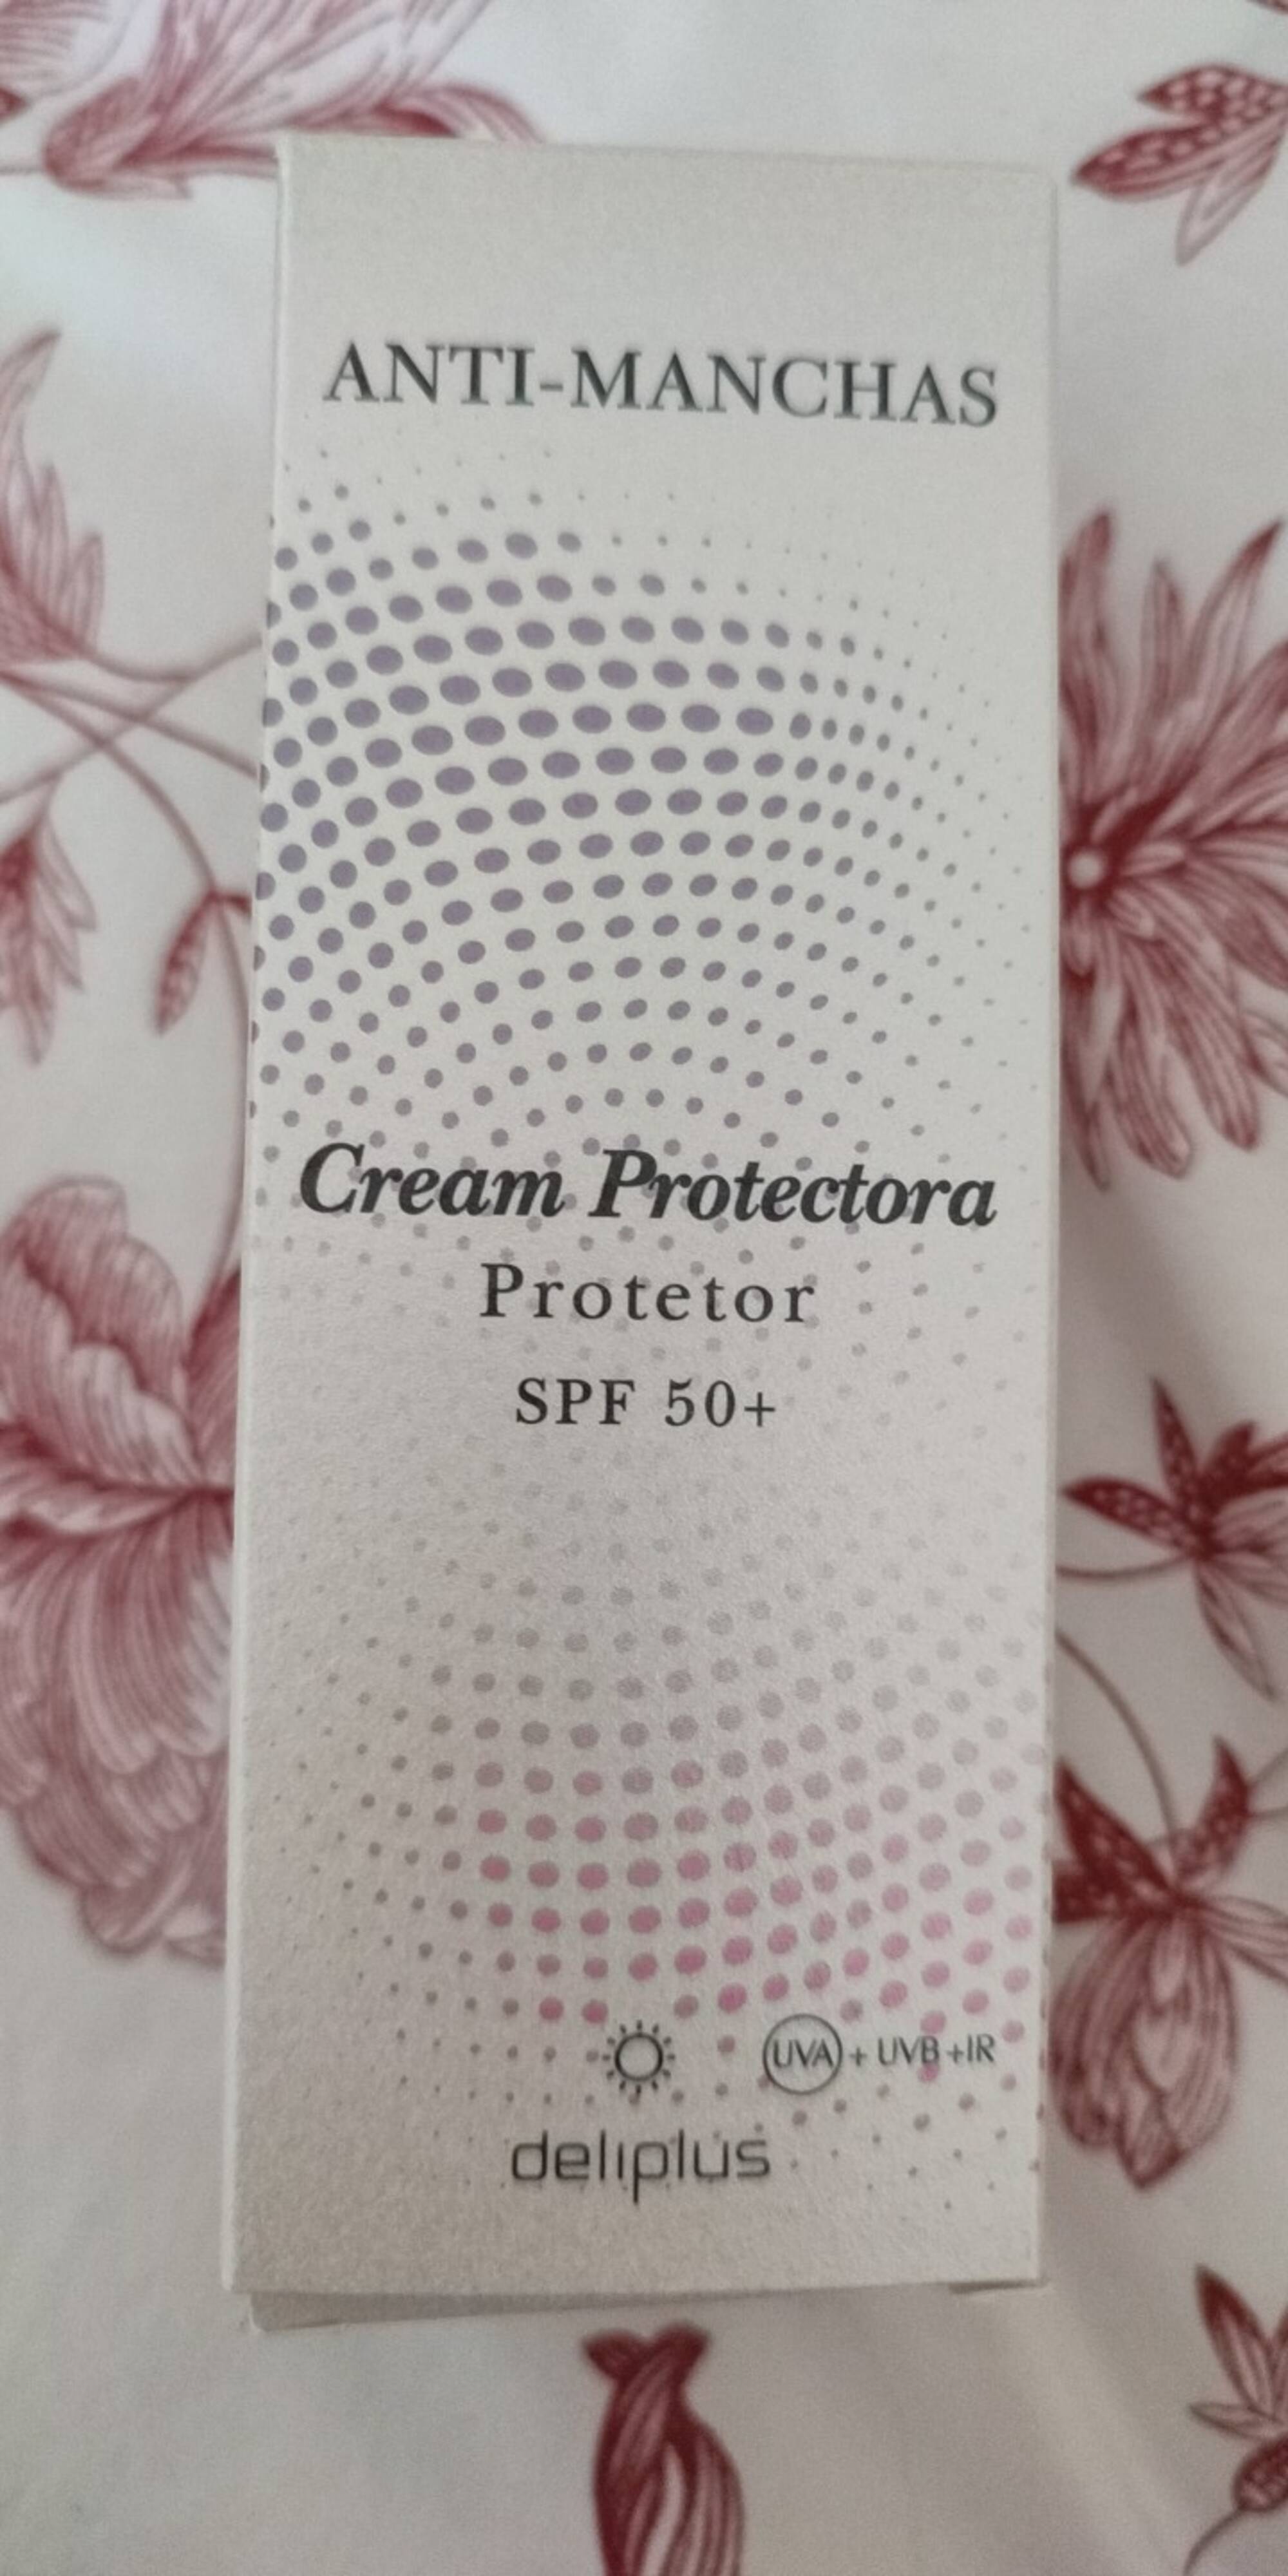 DELIPLUS - Anti-manchas - Cream protectora SPF 50+